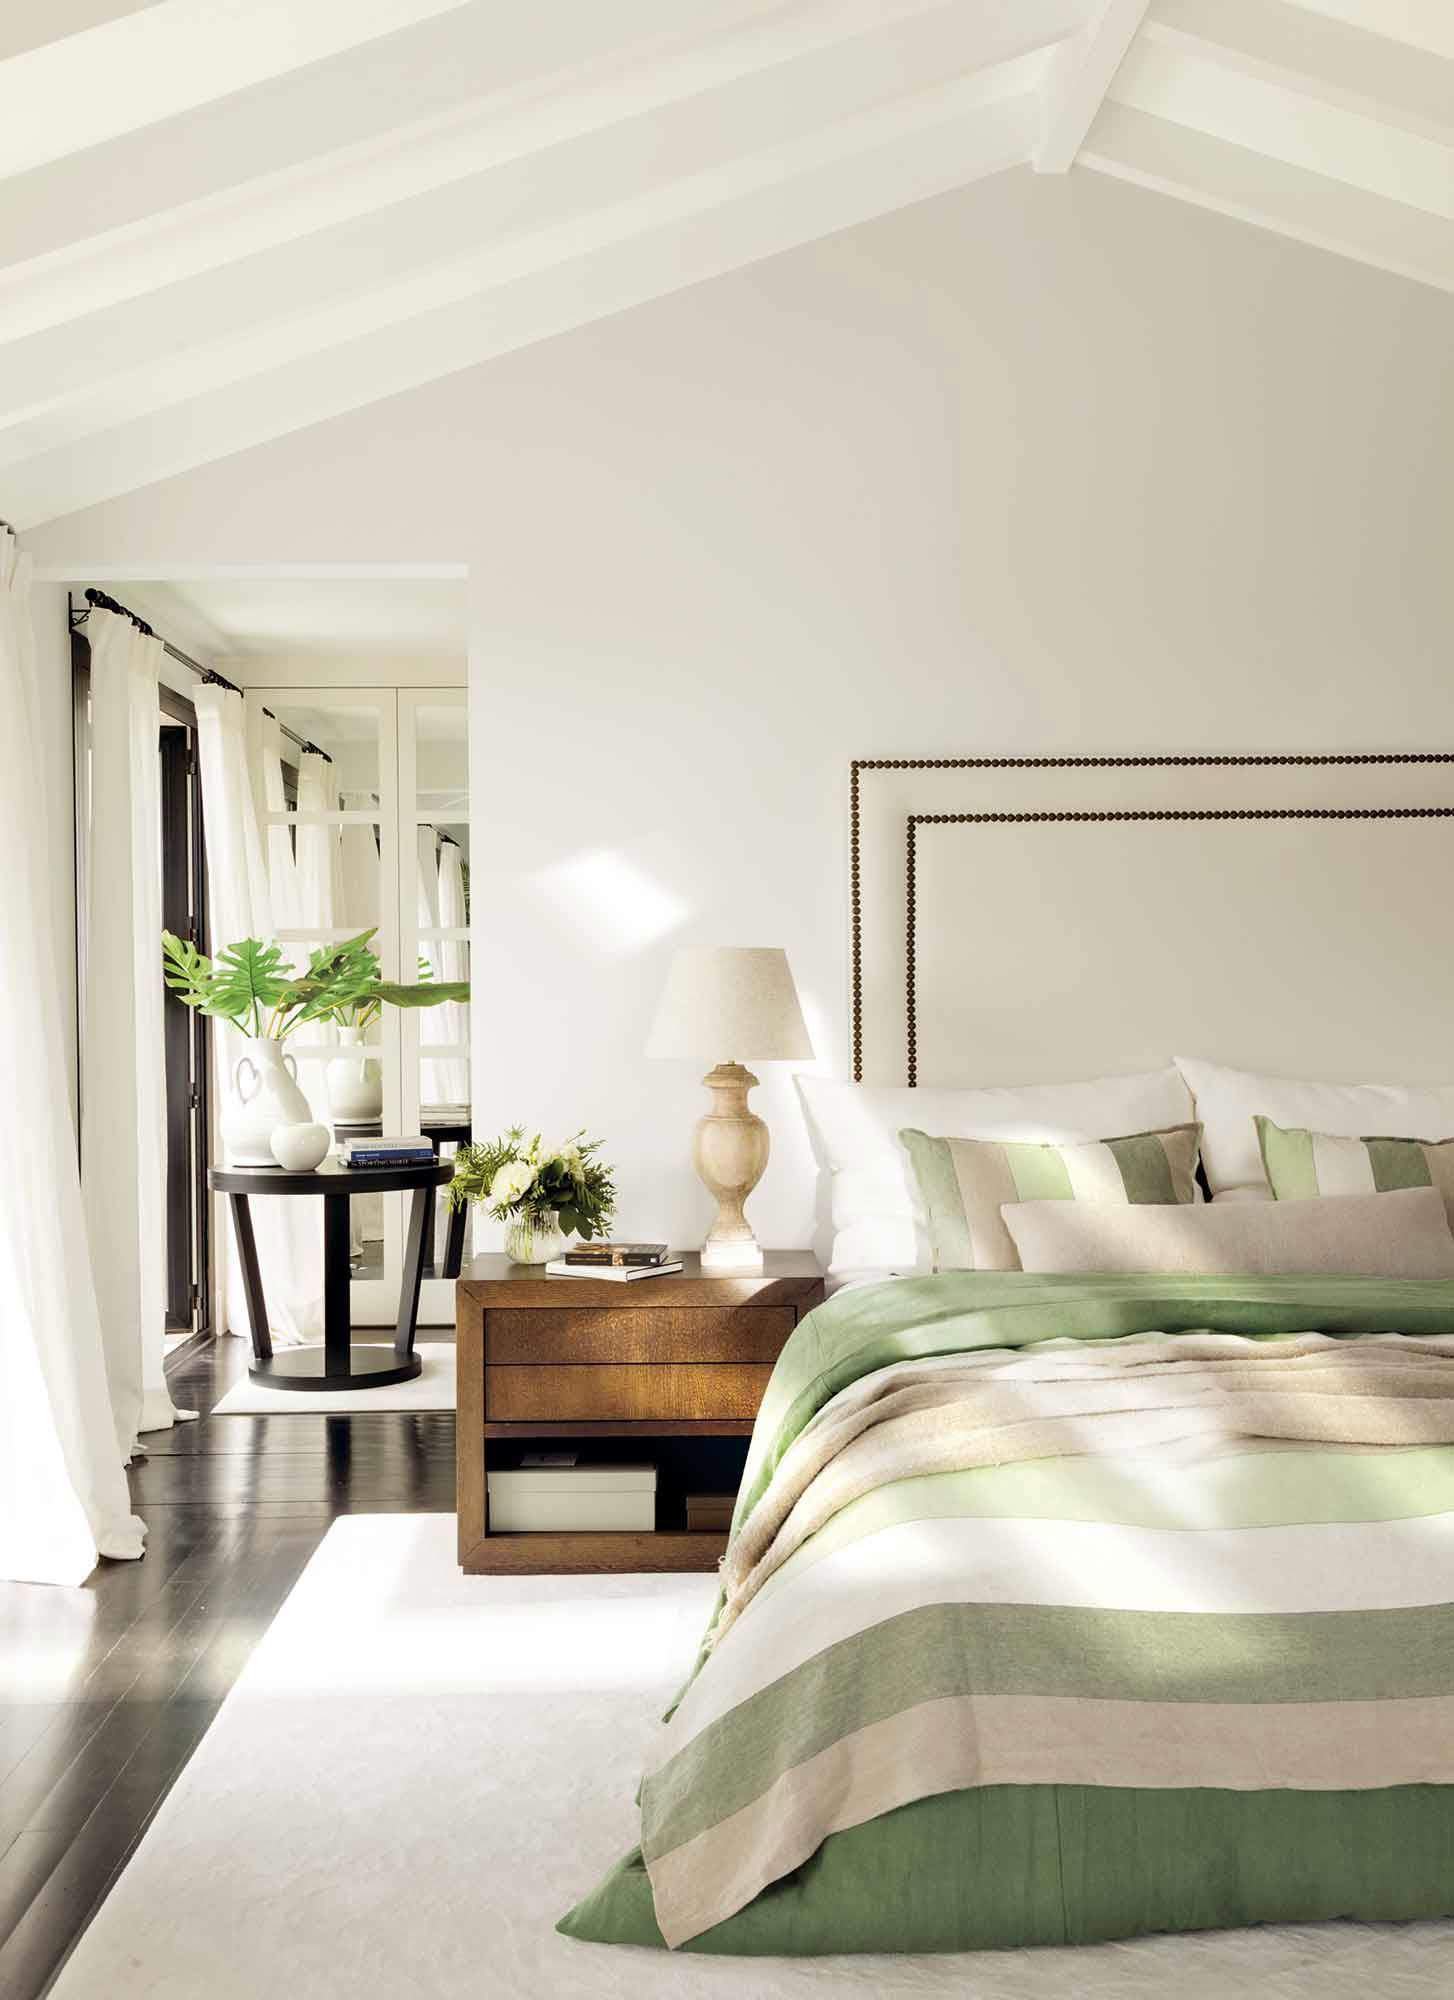 Dormitorio con techo abuhardillado en blanco, ropa de cama en tonos verdes a juego con arreglos florales.